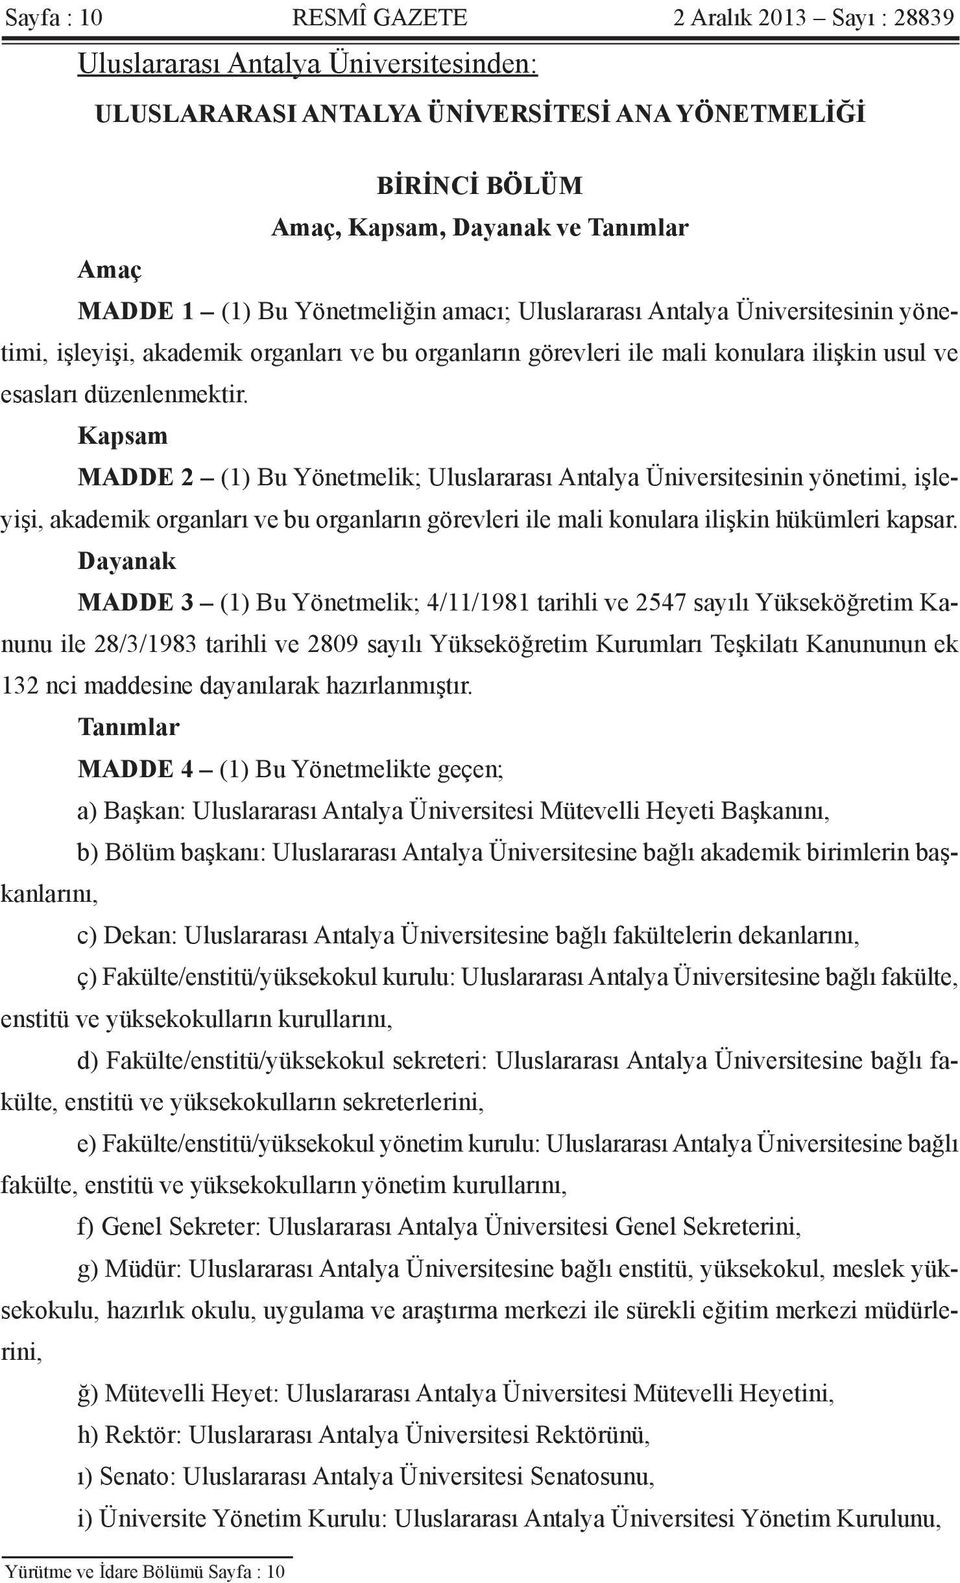 Kapsam MADDE 2 (1) Bu Yönetmelik; Uluslararası Antalya Üniversitesinin yönetimi, işleyişi, akademik organları ve bu organların görevleri ile mali konulara ilişkin hükümleri kapsar.